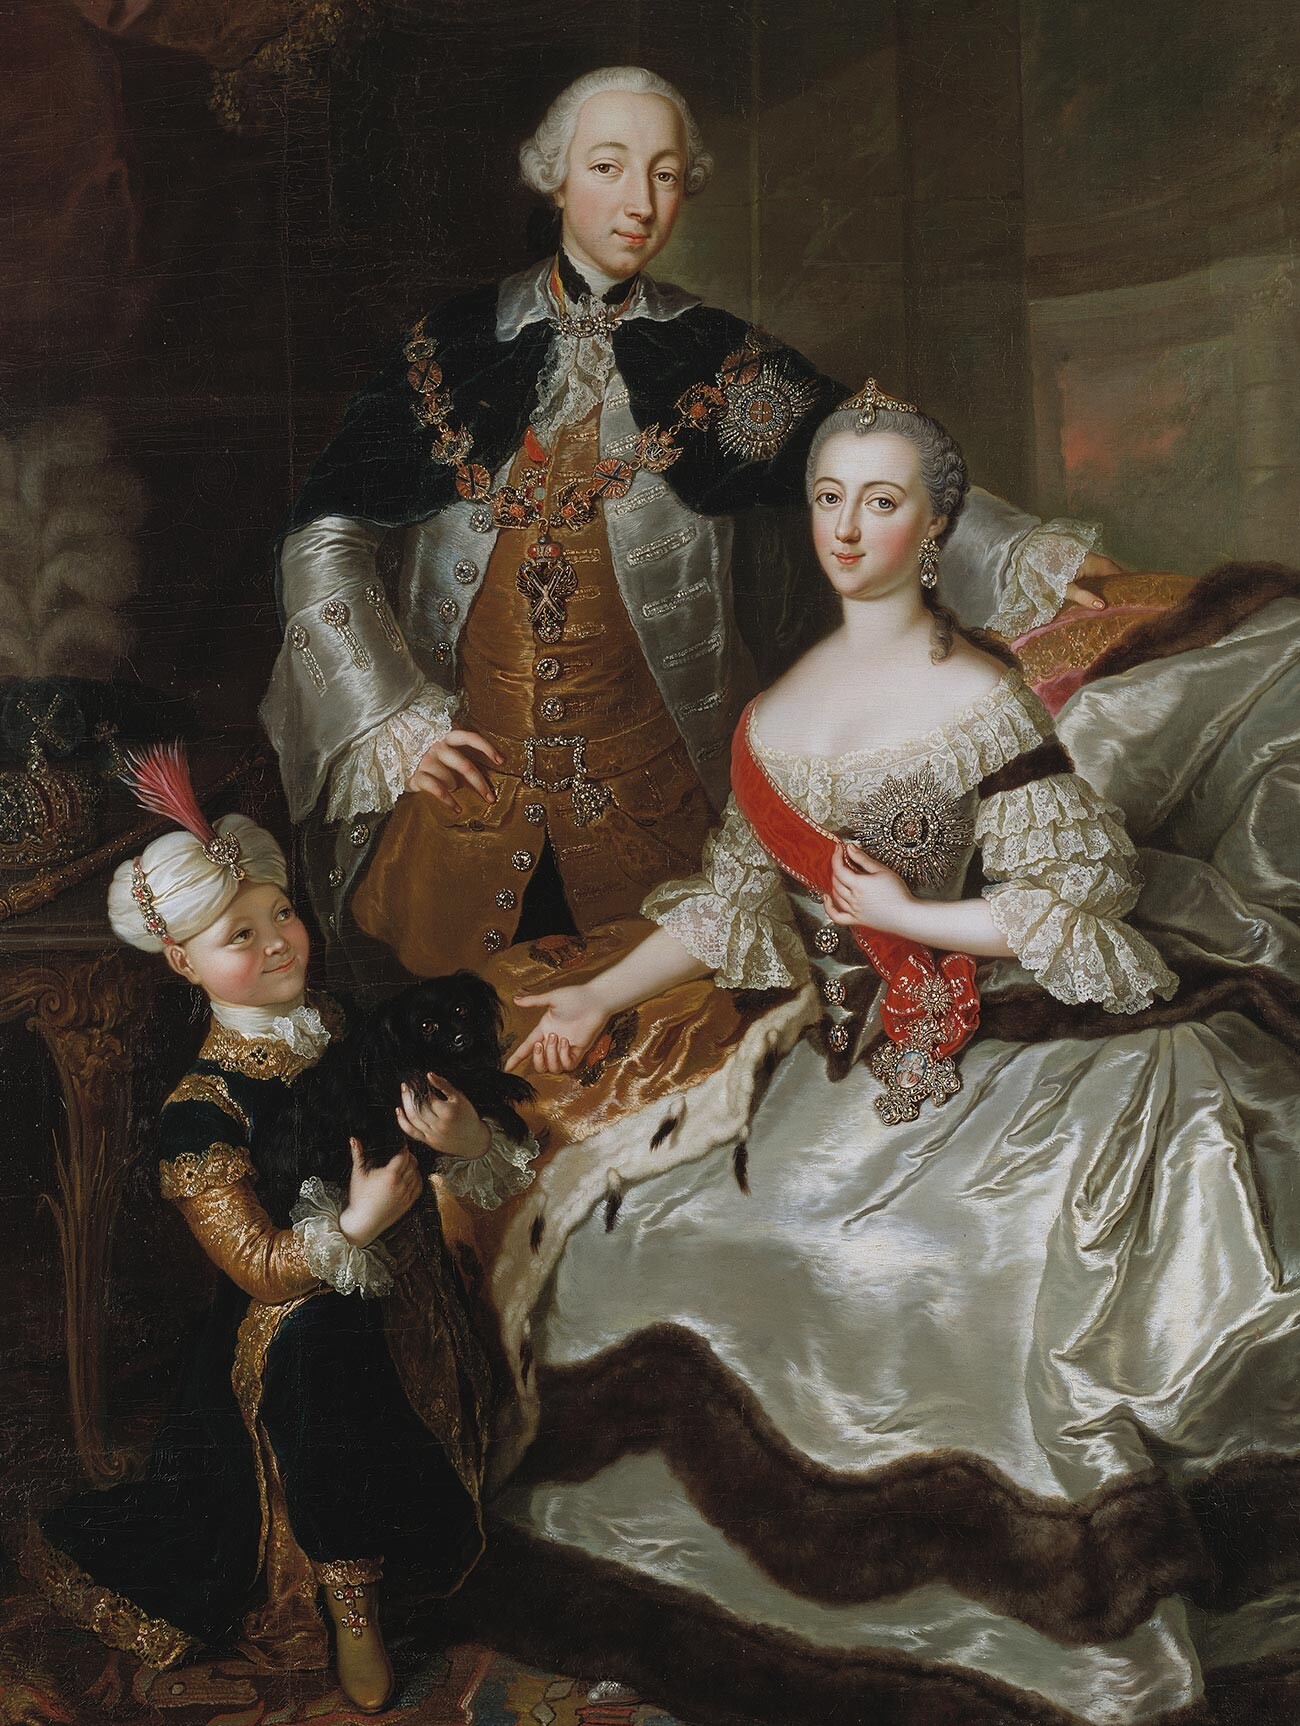 Pedro III y Catalina II de Rusia